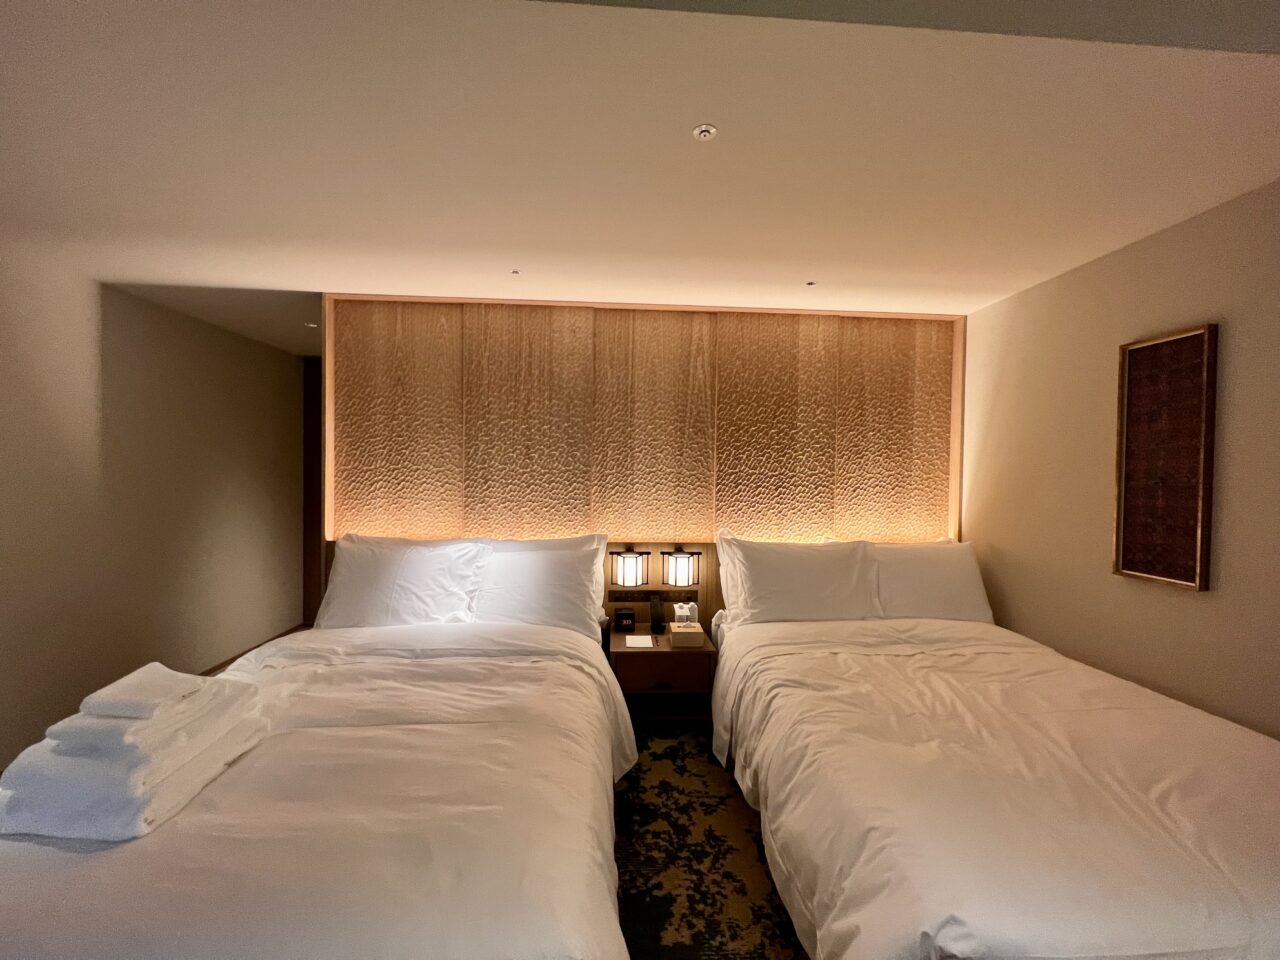 紫翠ラグジュアリーコレクションホテル奈良の客室(デラックスキング・温泉風呂付)のベッド